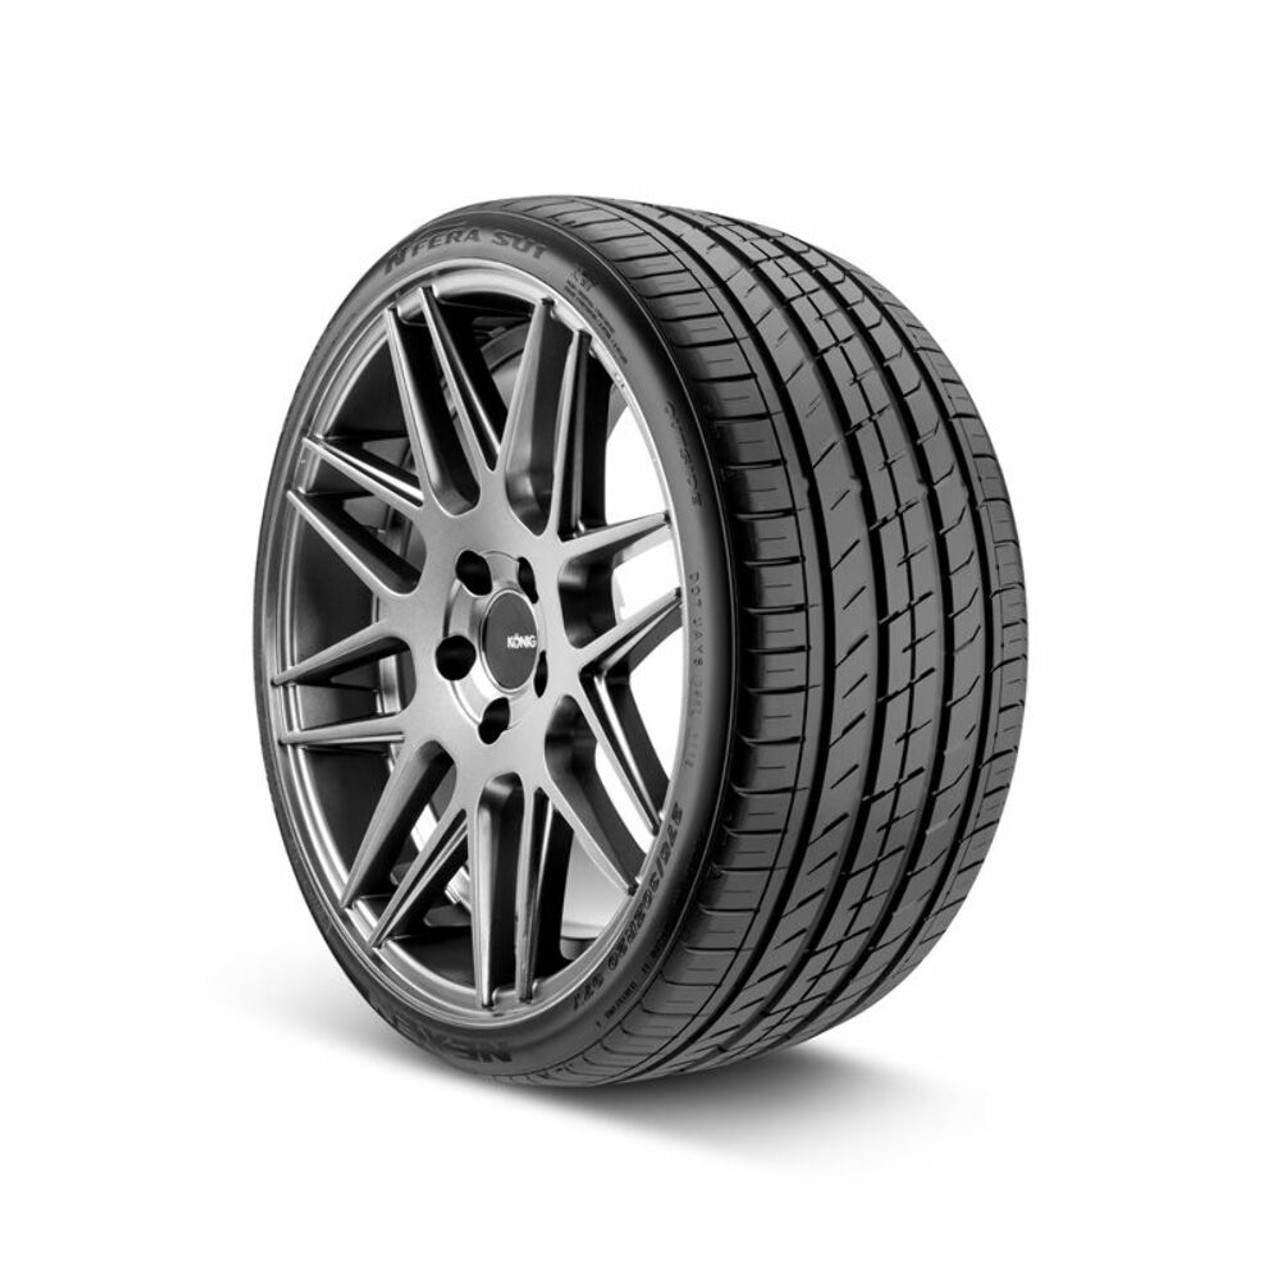 Set 4 215/40ZR17 Nexen N'Fera SU1 87W 2154017 High Performance Summer Tires